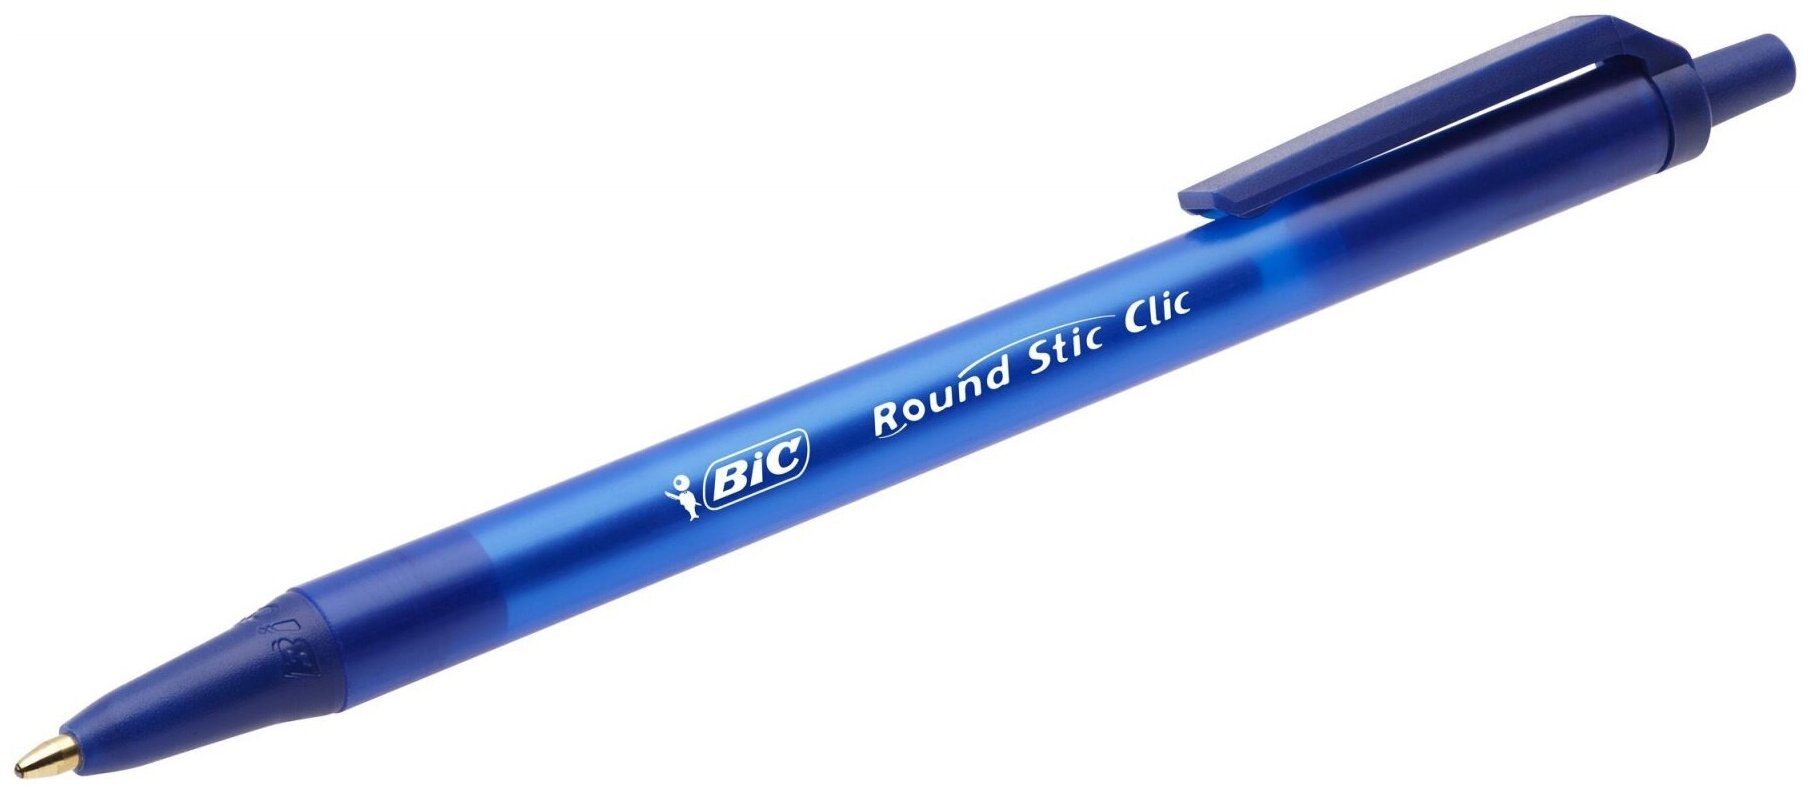 Ручки шариковые автоматические BIC "Round Stic Clic", набор 3 шт, синие, линия письма 0,32 мм, блистер, 926374